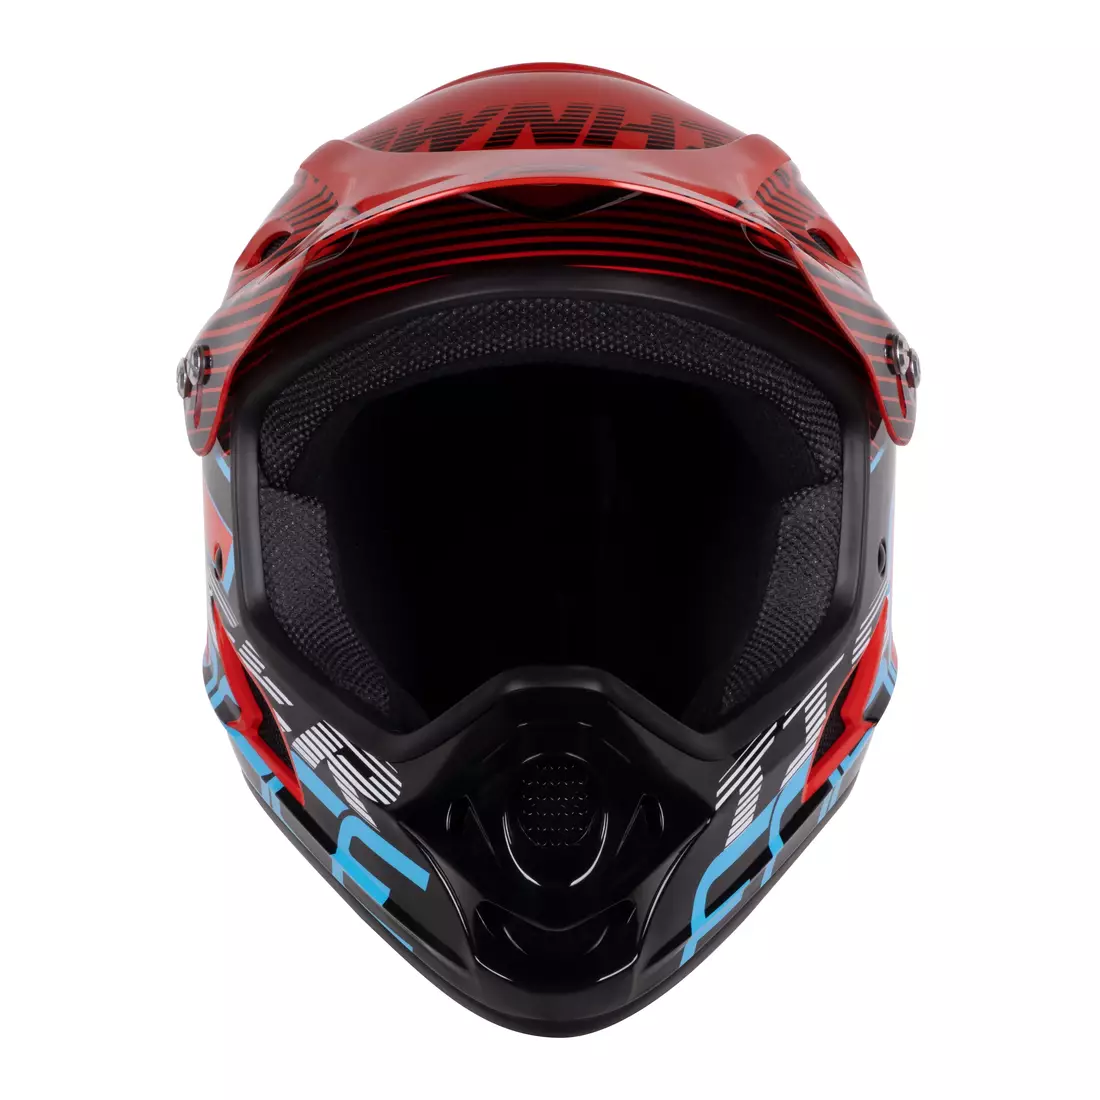 FORCE celoobličejová cyklistická helma TIGER, červeno-černo-modrá 902108